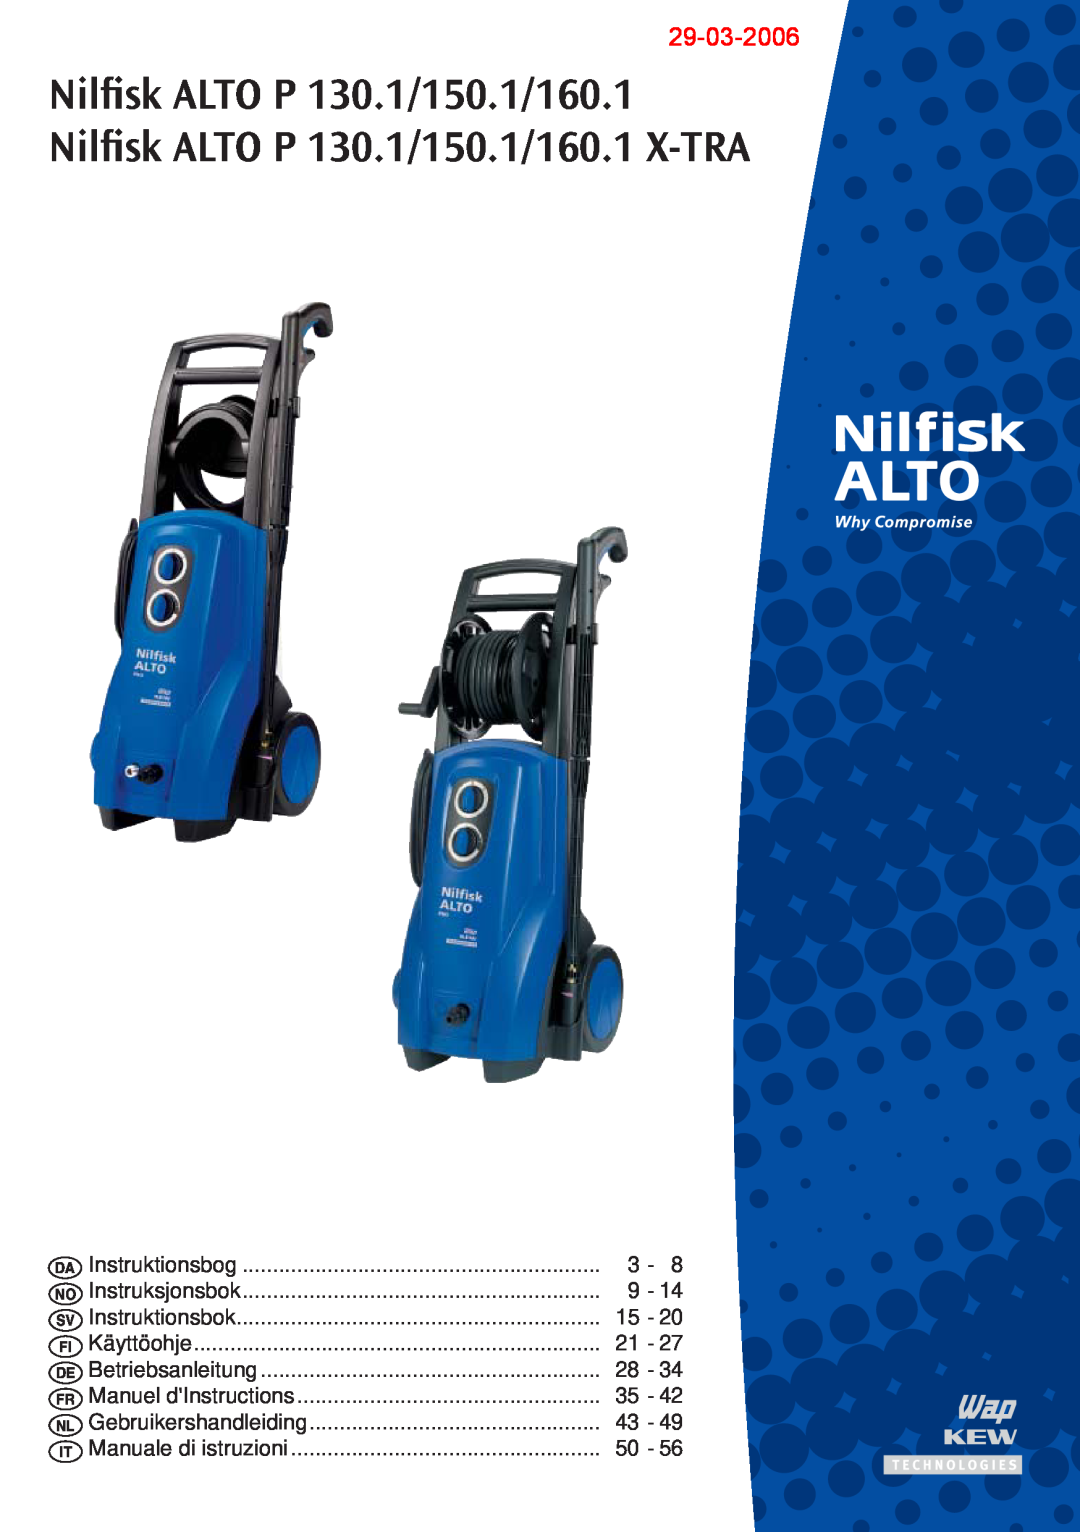 Nilfisk-ALTO P 130.1, P 150.1, P 160.1, P 160.1 X-TRA manual Nilﬁsk ALTO P 130.1/150.1/160.1, 29-03-2006 